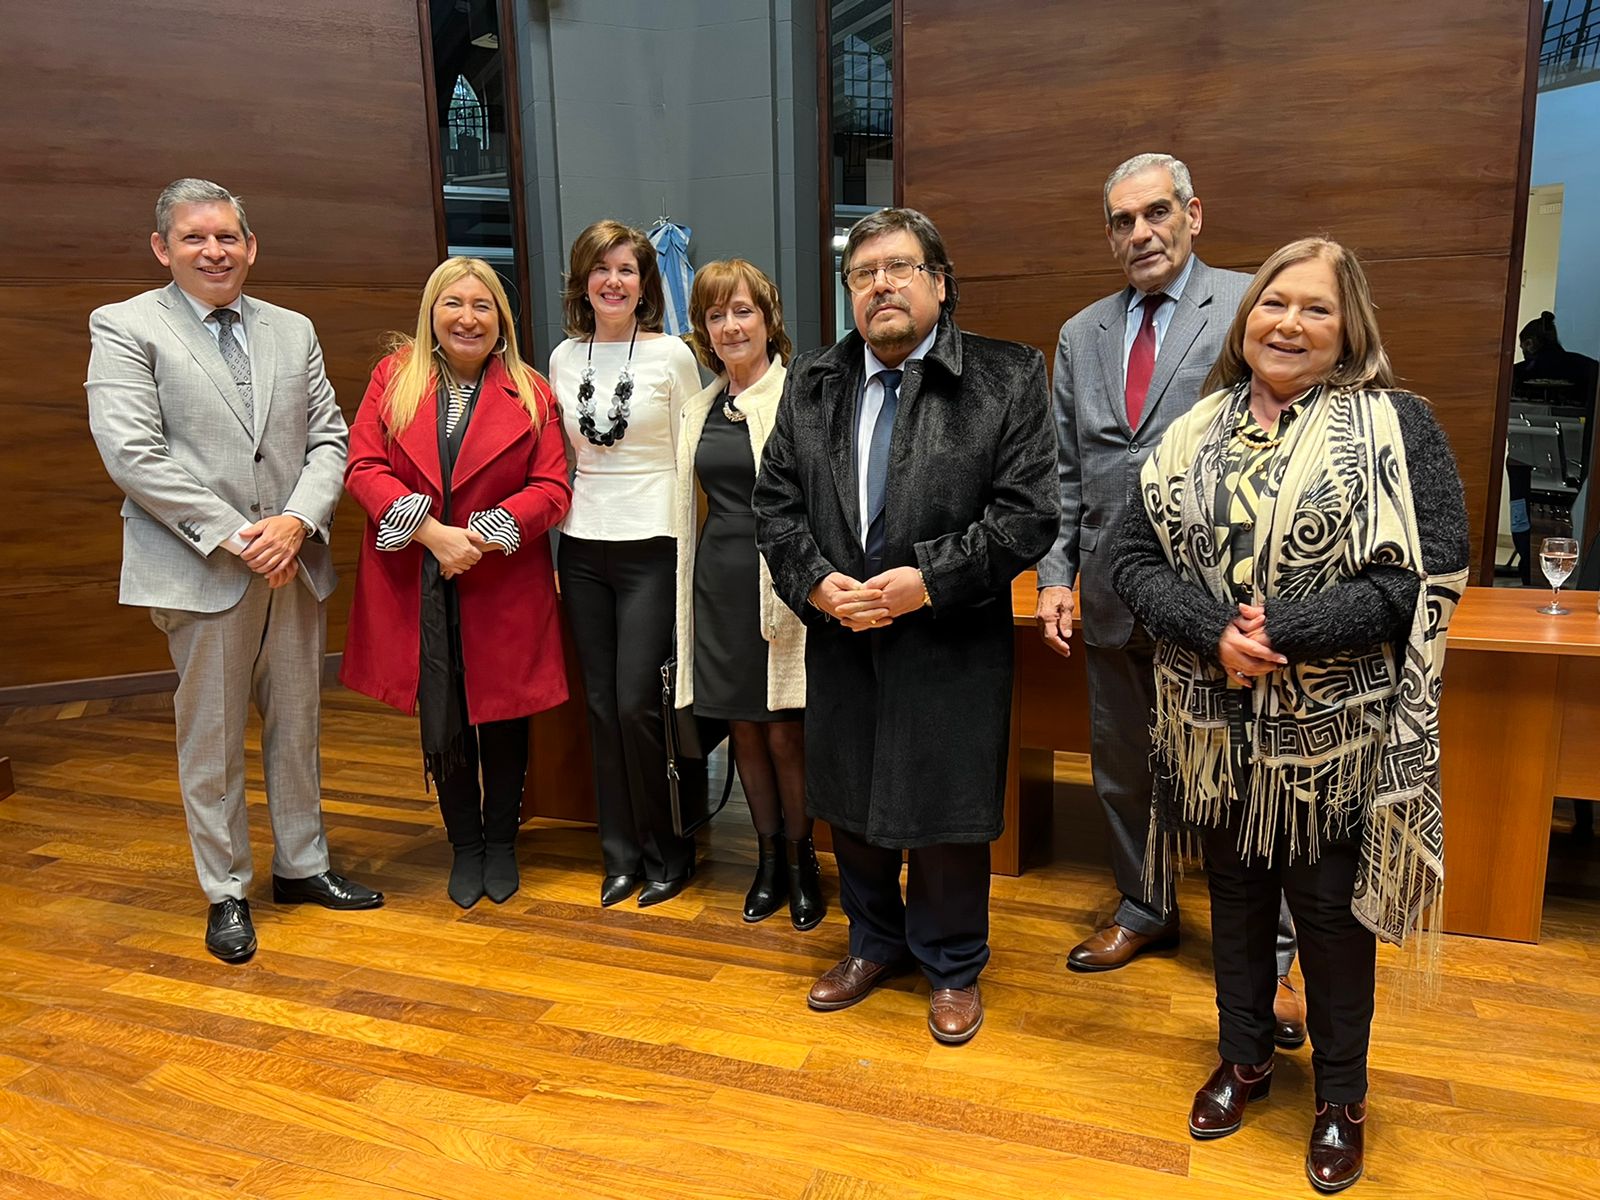 La Corte tucumana homenajeó a magistrados/as jubilados por sus años de servicio en el Centro Judicial Concepción